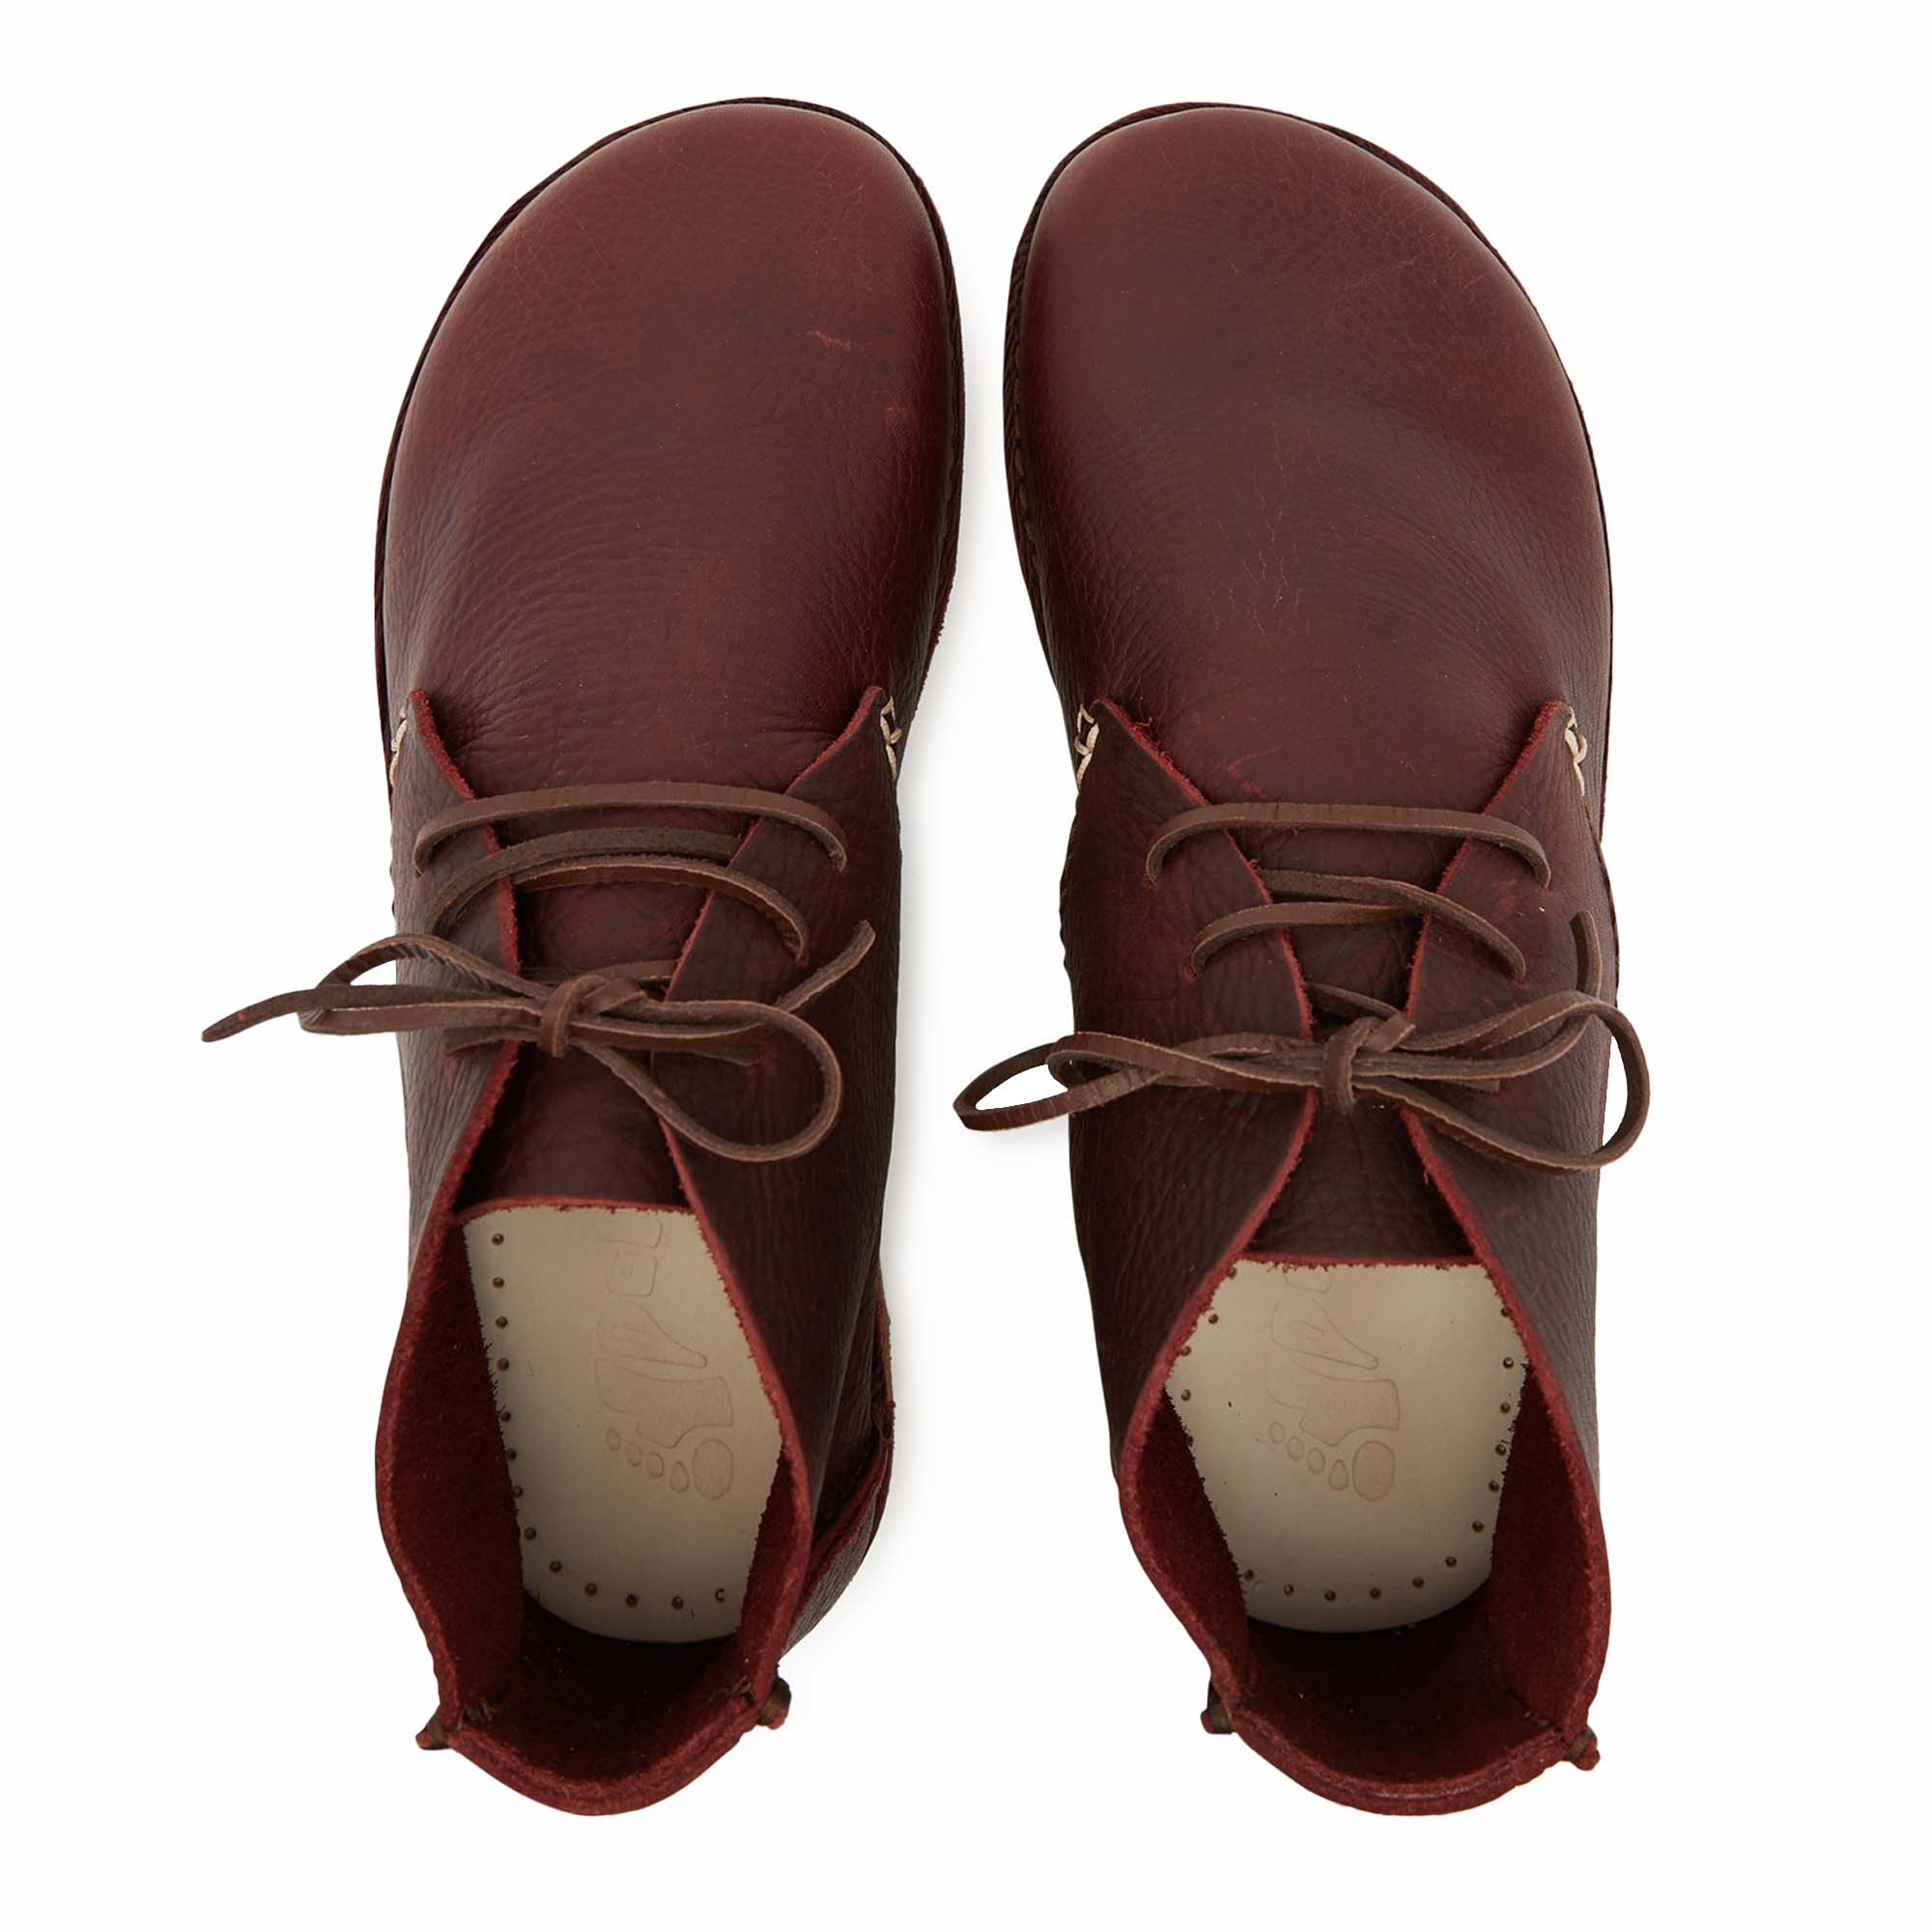 Yogi Glenn Crepe Sole Chukka Boot - Burgundy Tumbled Leather